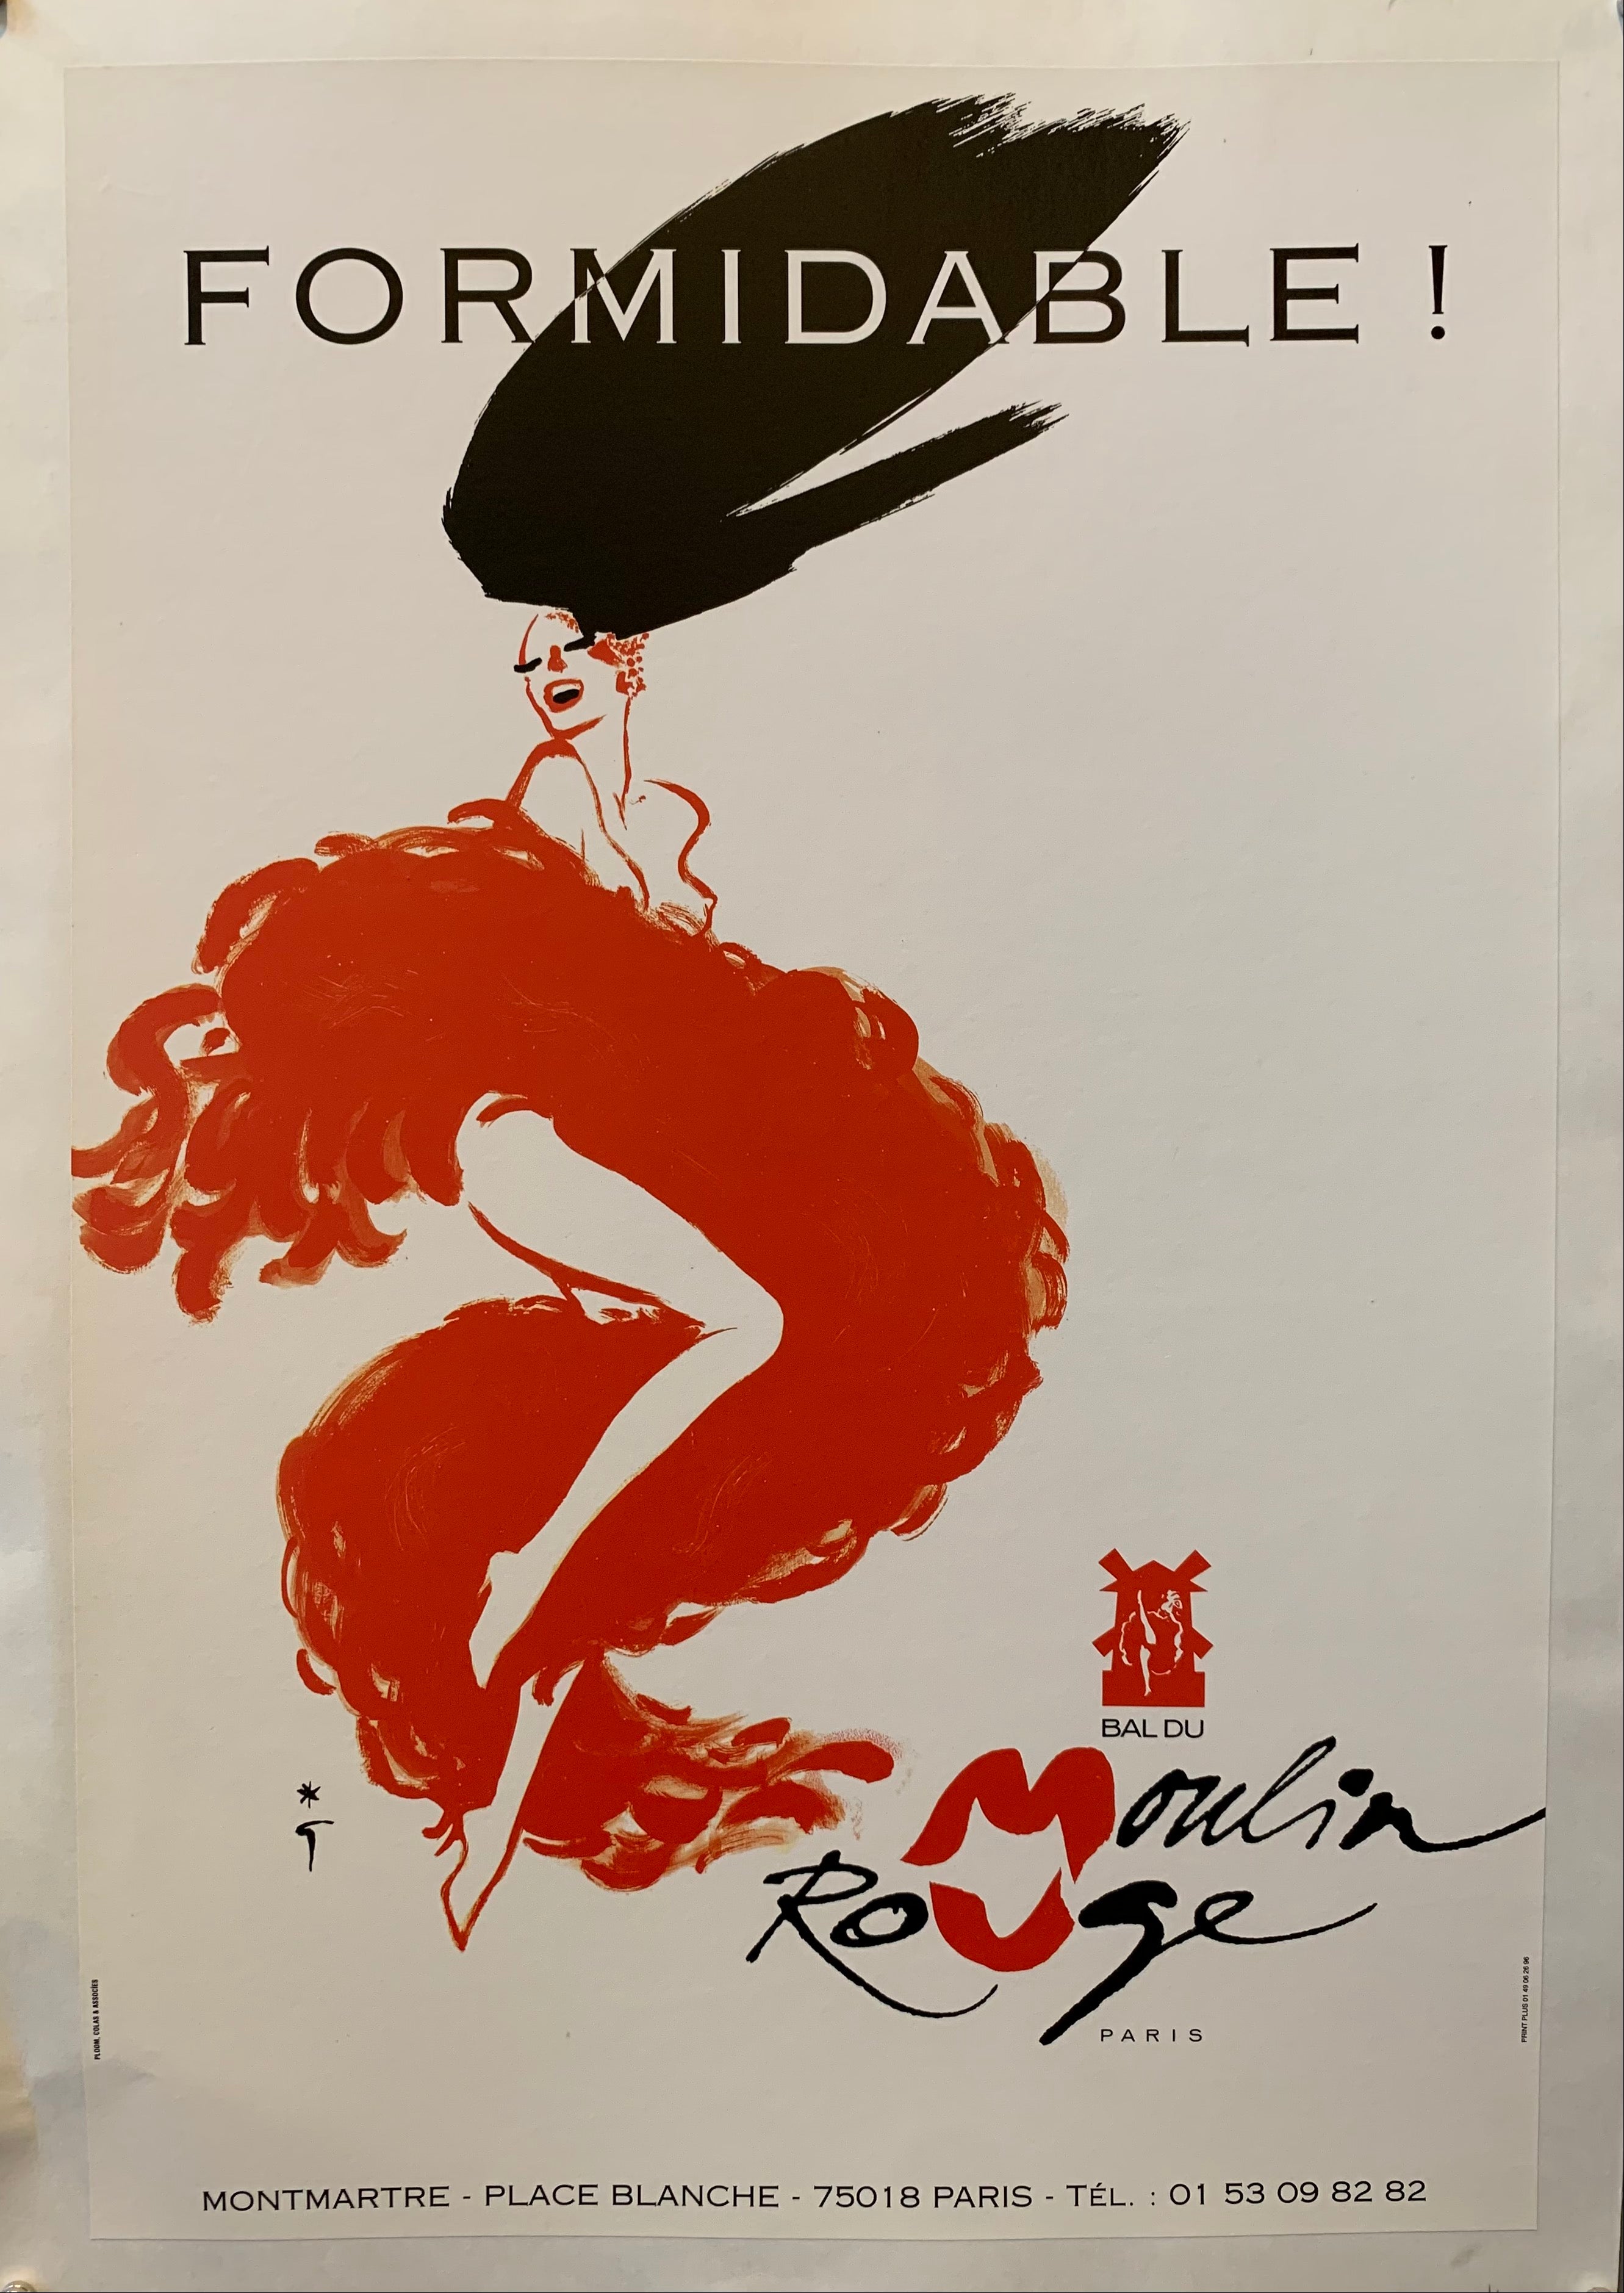 moulin rouge vintage poster